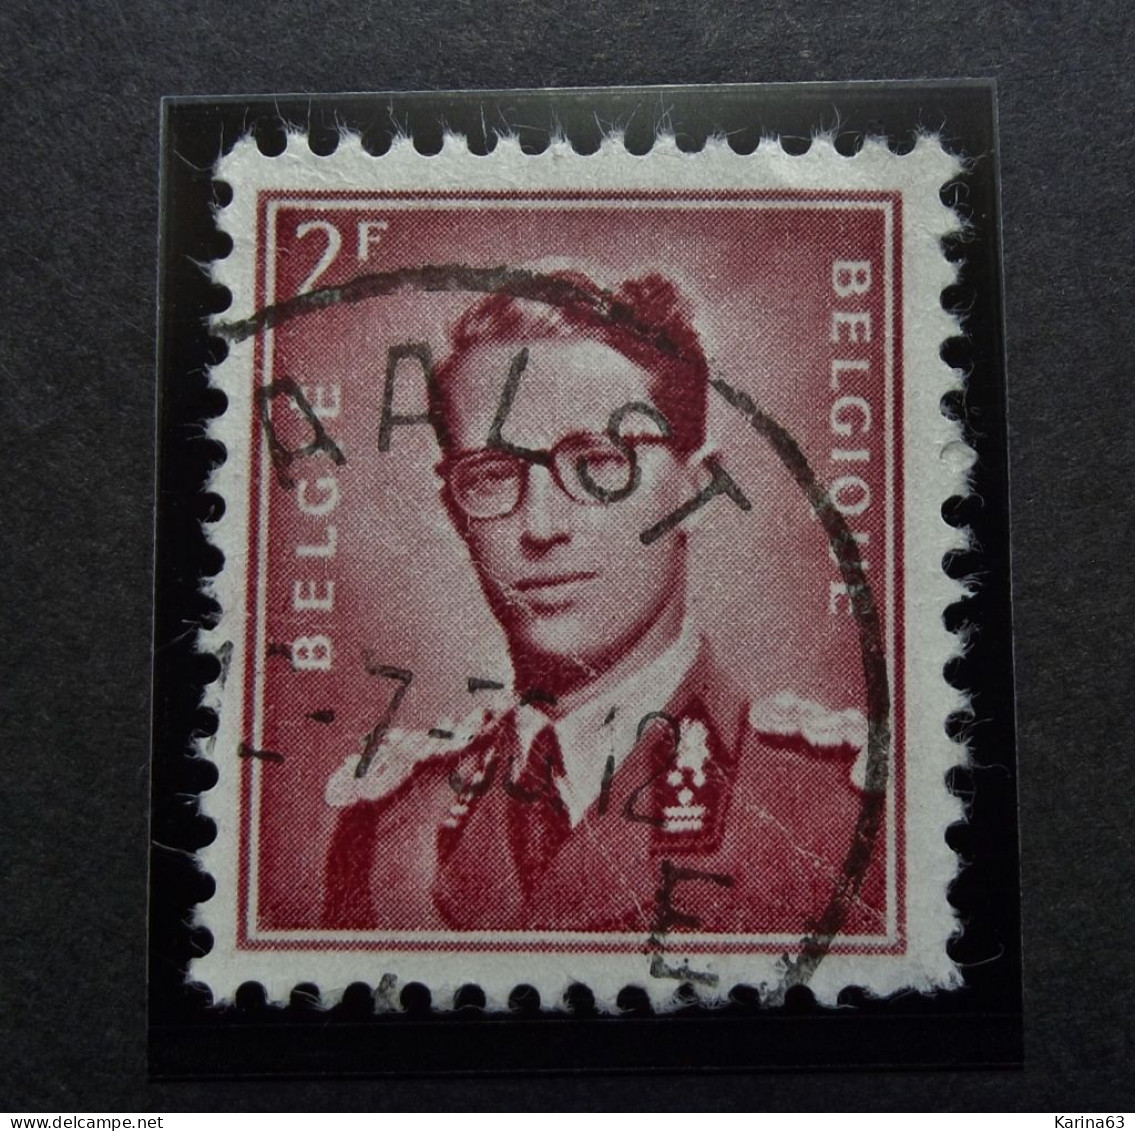 Belgie Belgique - 1953 -  OPB/COB  N° 925 - 2 F  - Obl.  - AALST - 1956 - Used Stamps